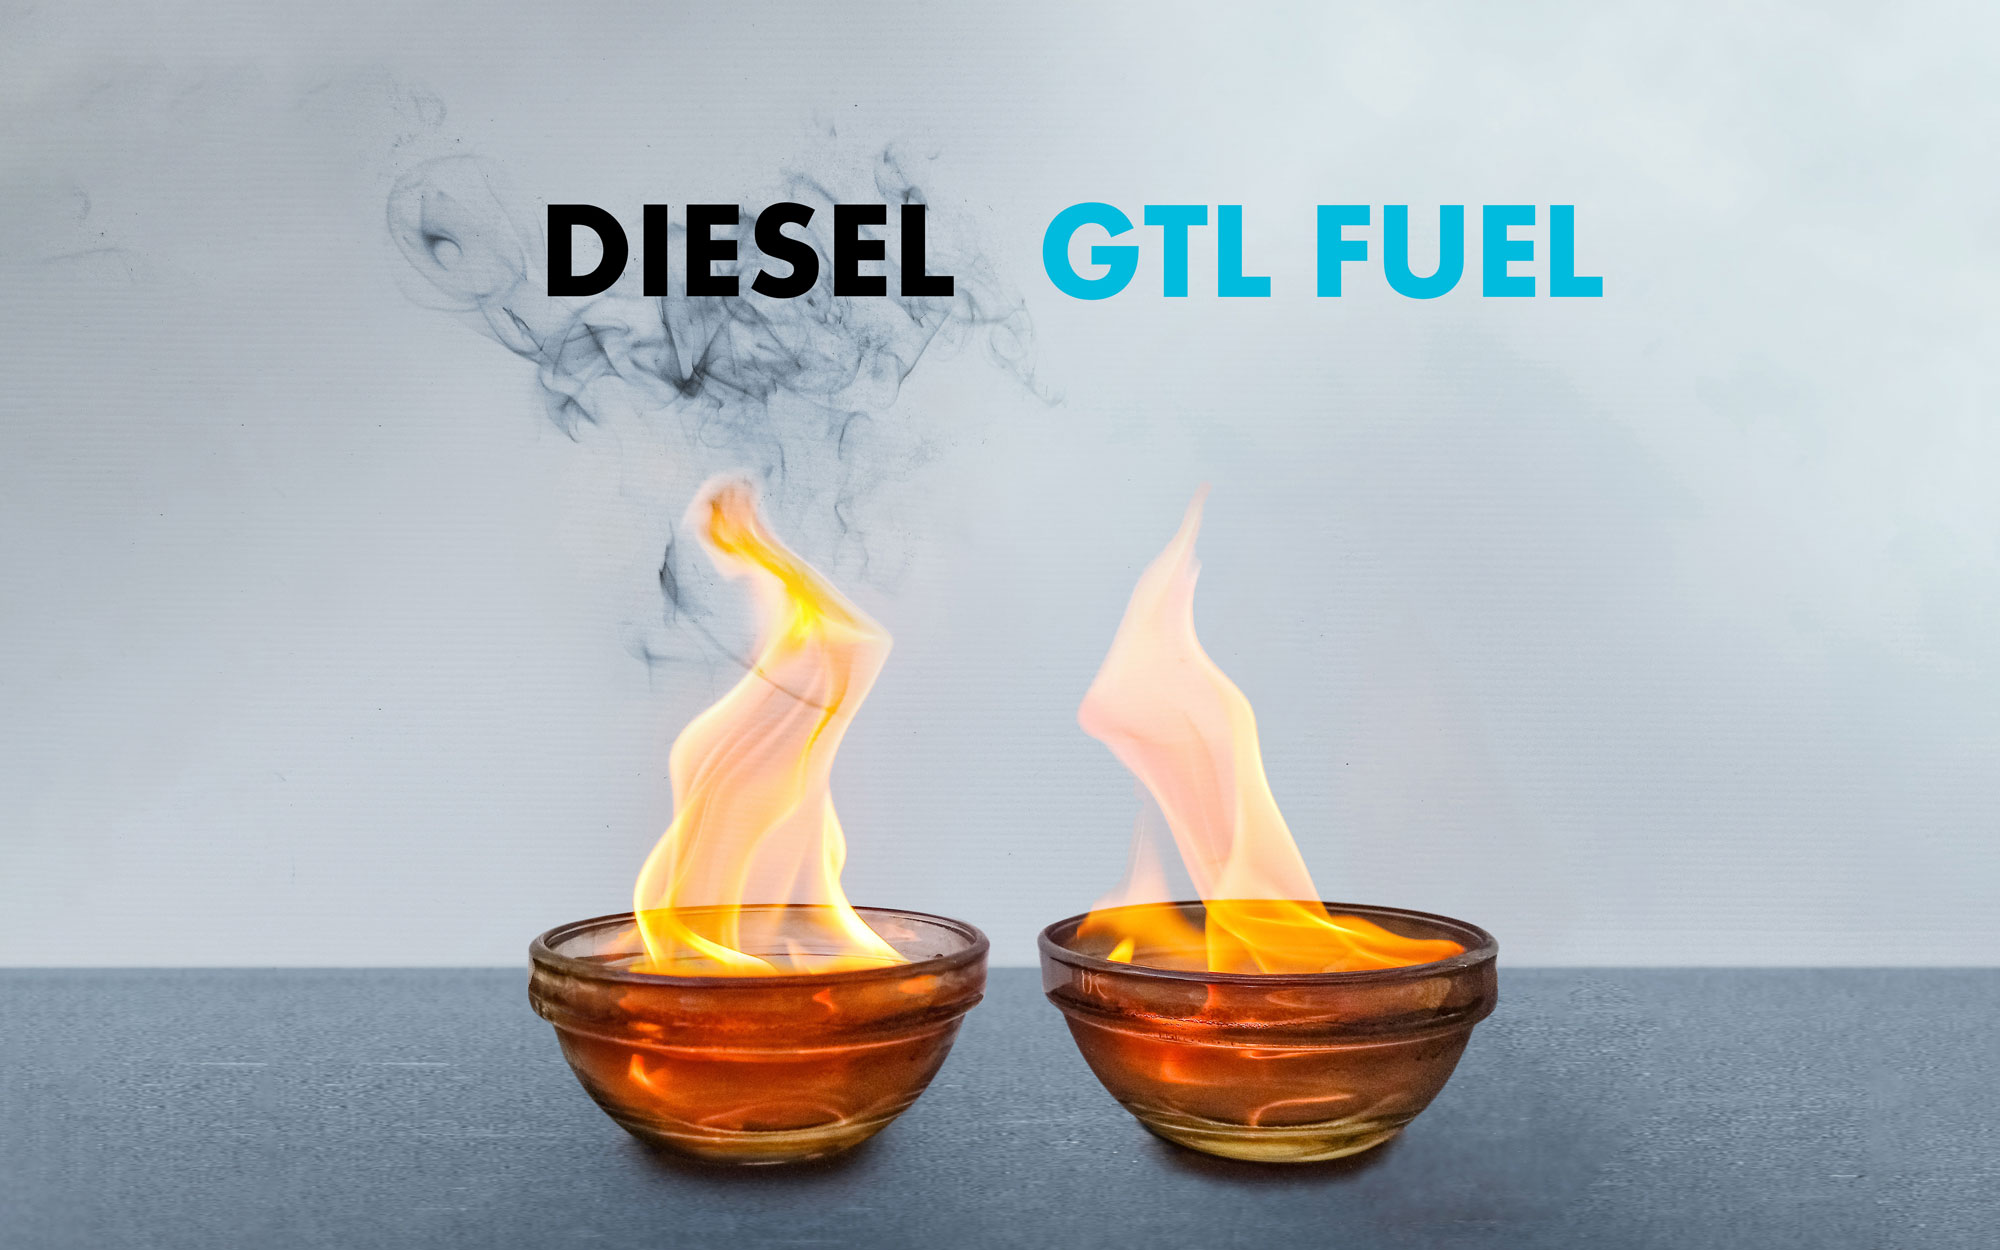  Schadstoffarme Verbrennung im Vergleich zu Diesel:GTL Fuel verbrennt mit bedeutend weniger Rauch, Feinstaub, Stickoxiden. Daneben schont GTL die Motoren. 